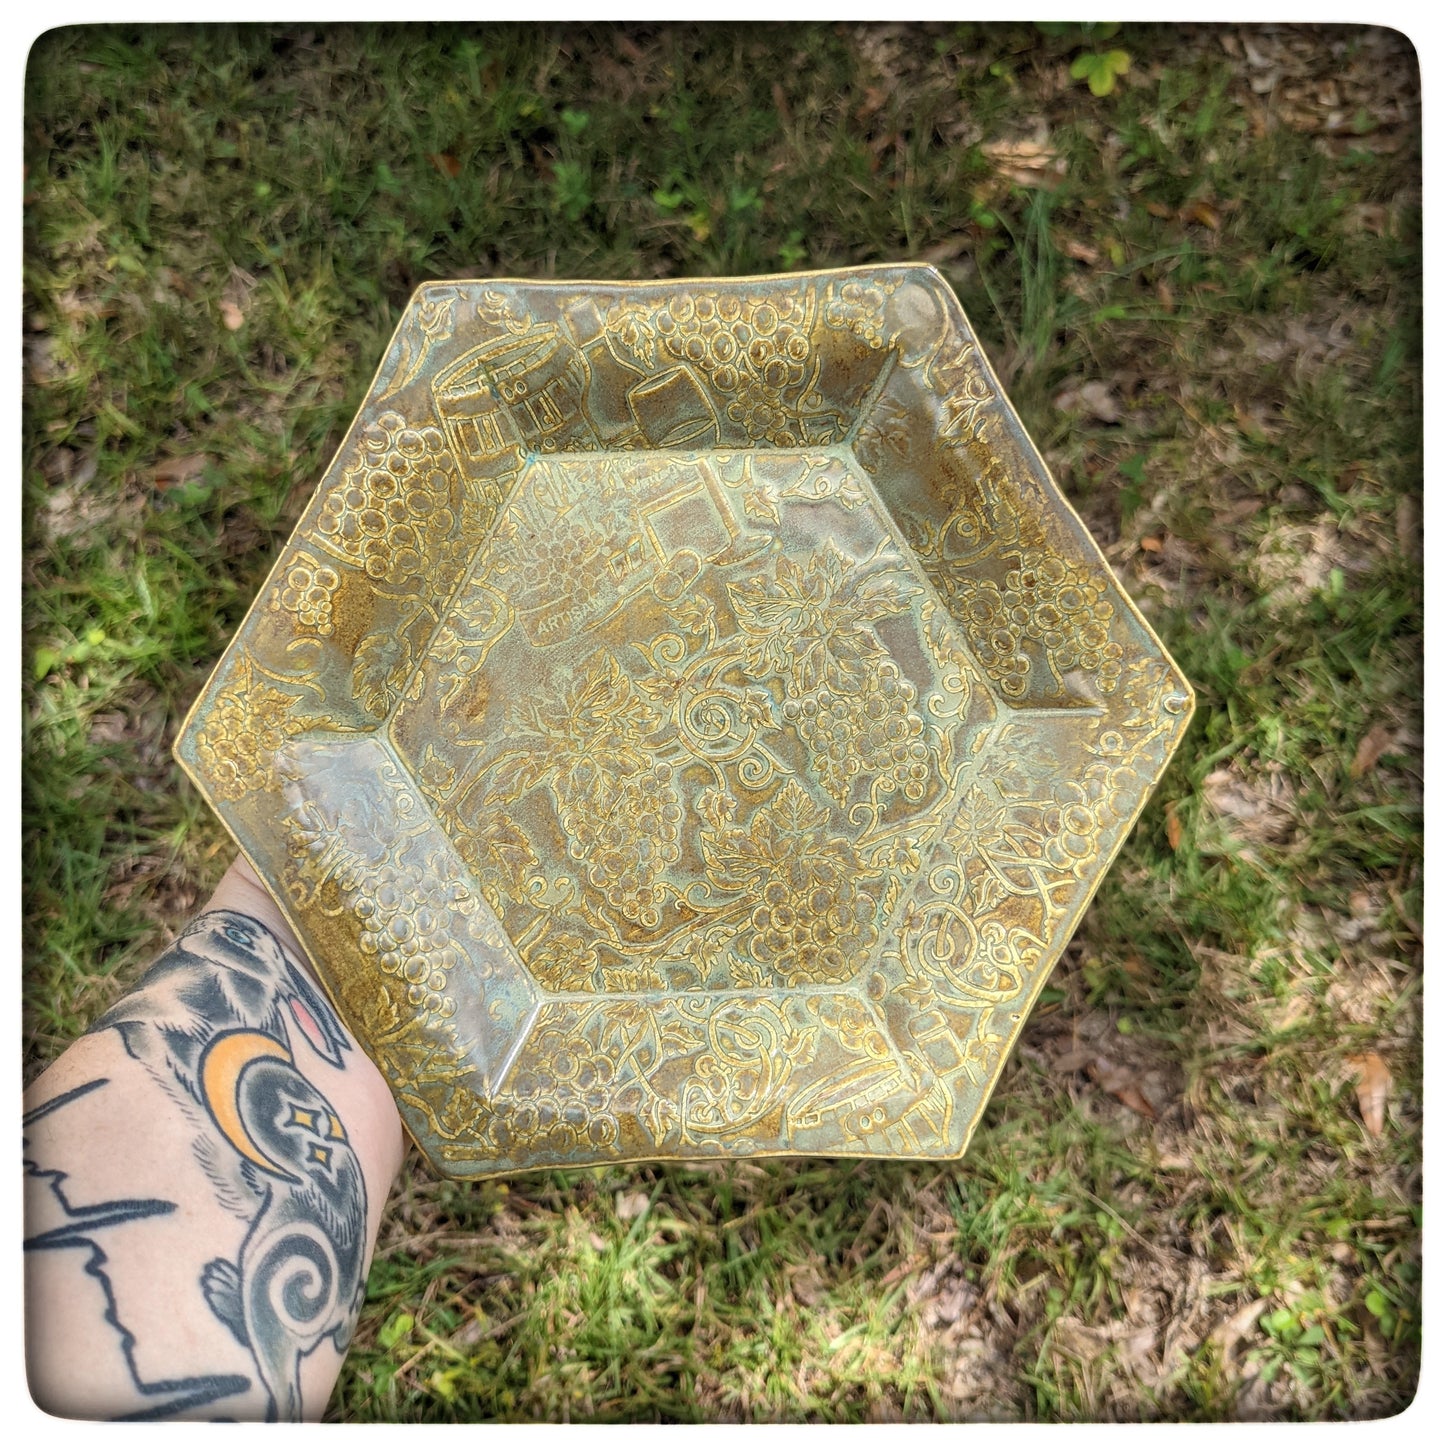 Grapevine Hexagon Dish (7 inch)